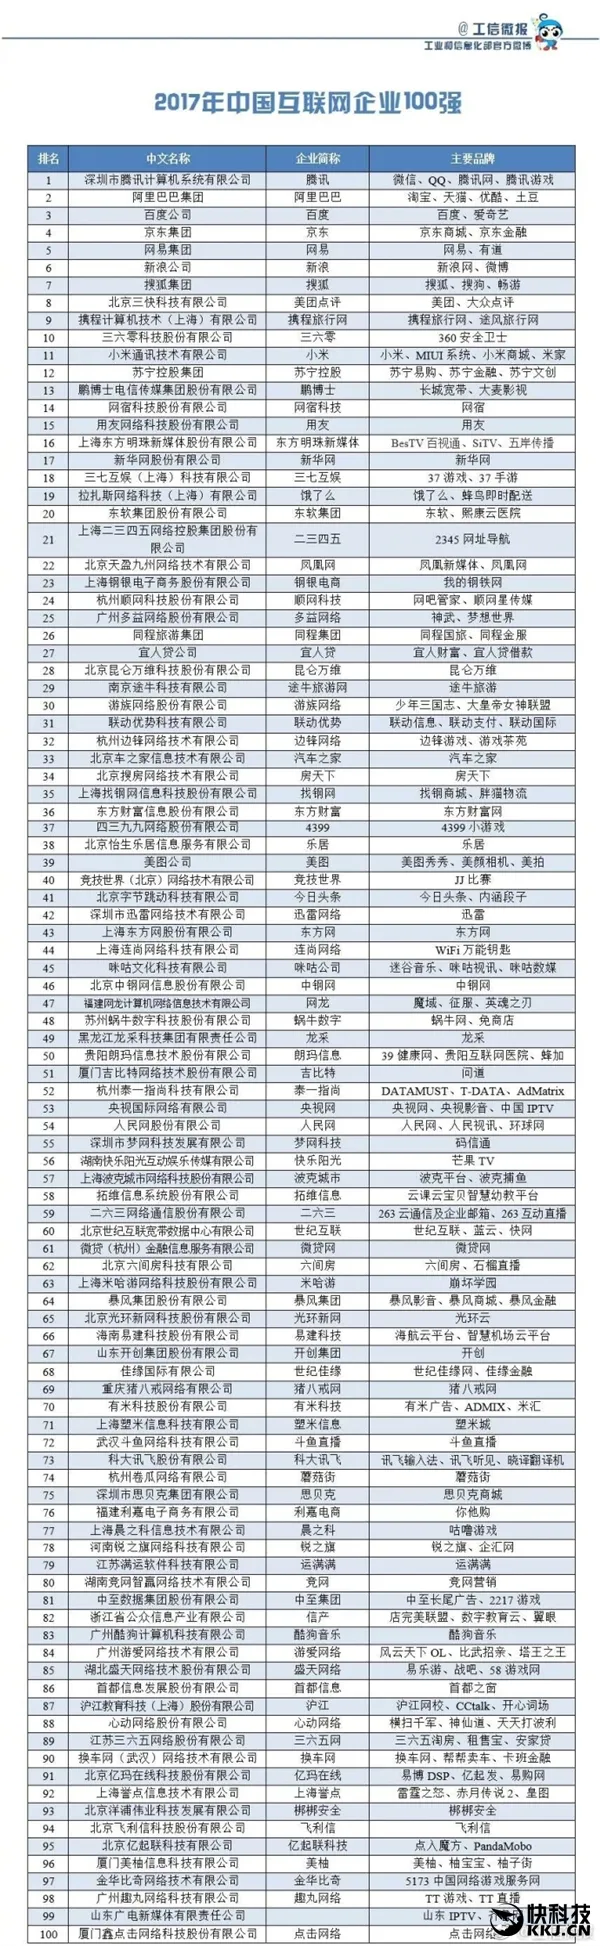 2017年中国互联网企业100强名单发布 乐视再见！